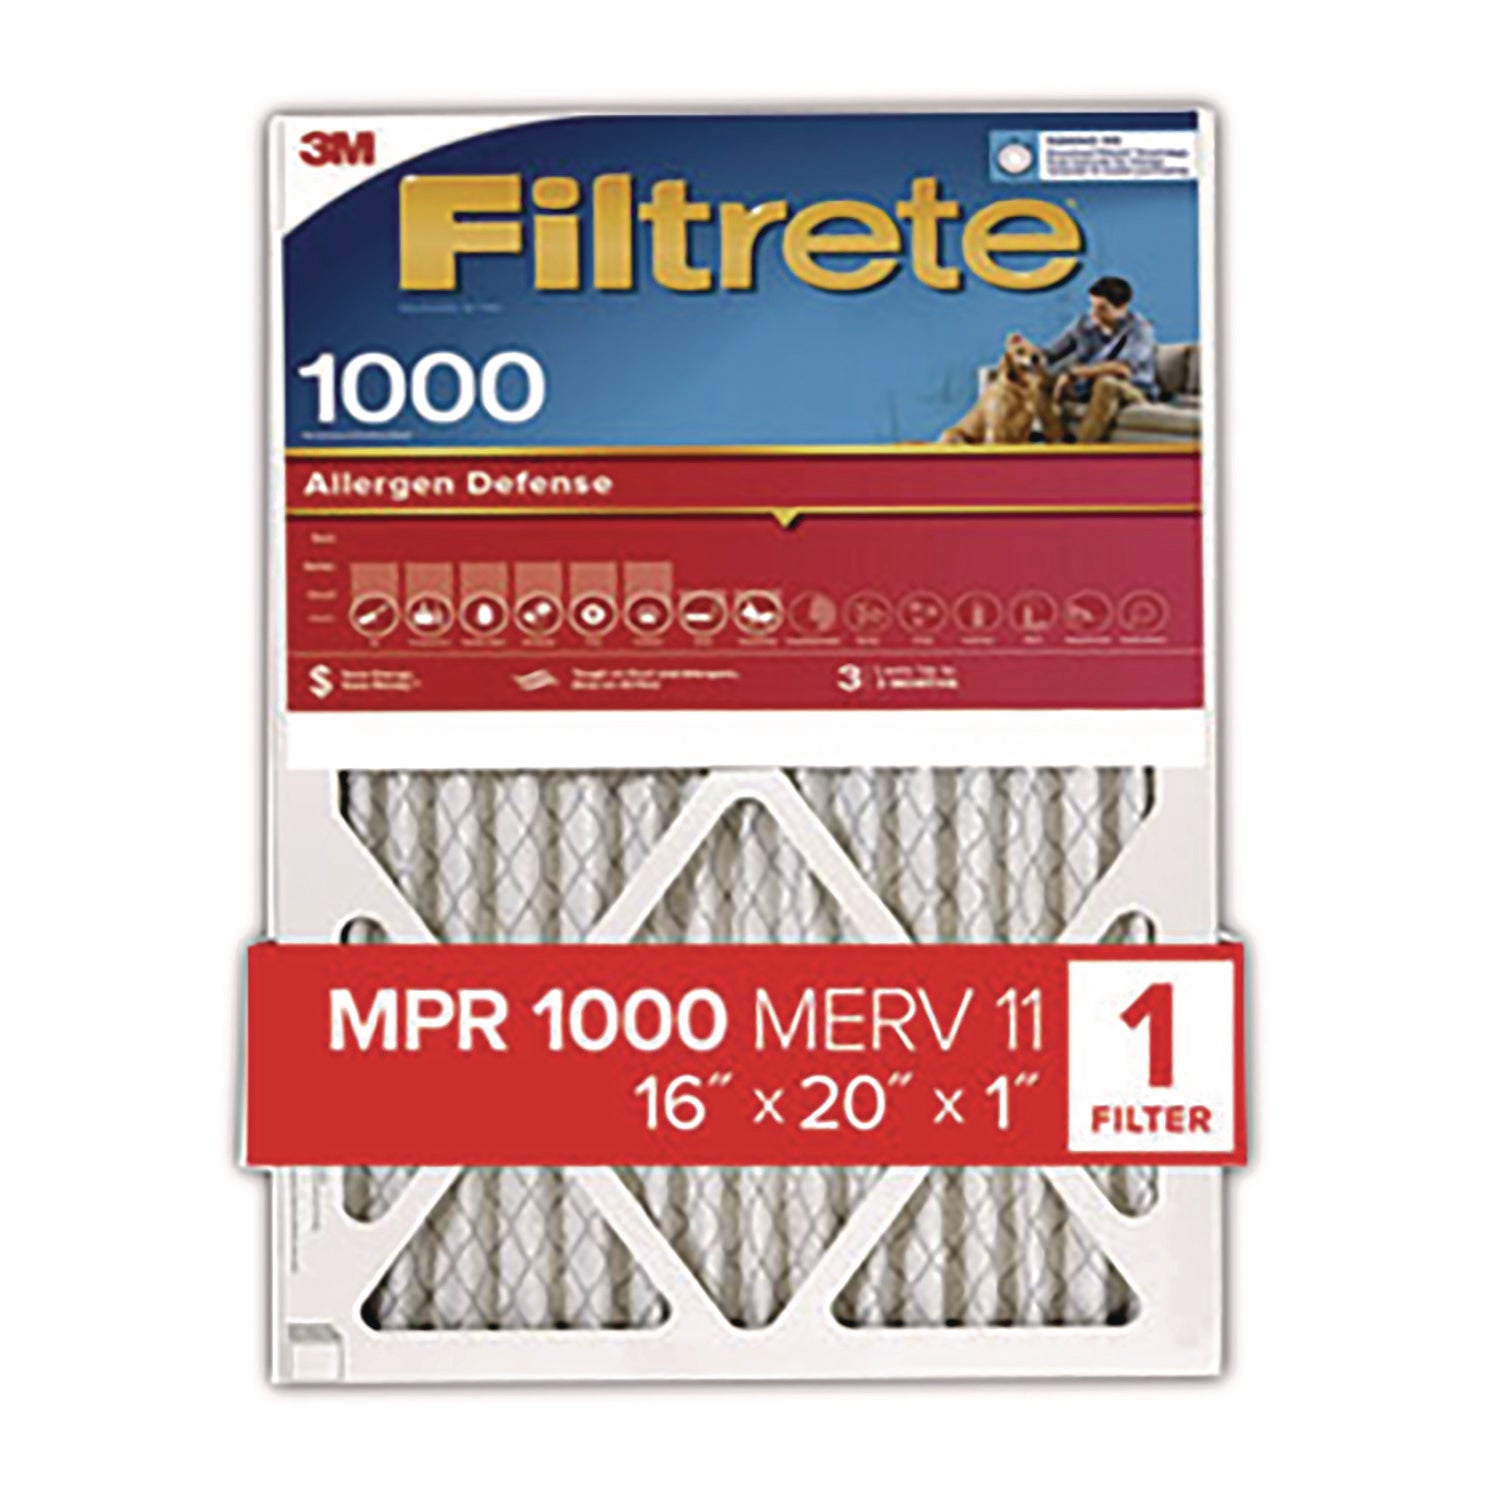 allergen-defense-air-filter-16-x-20_mmm70071355914 - 1